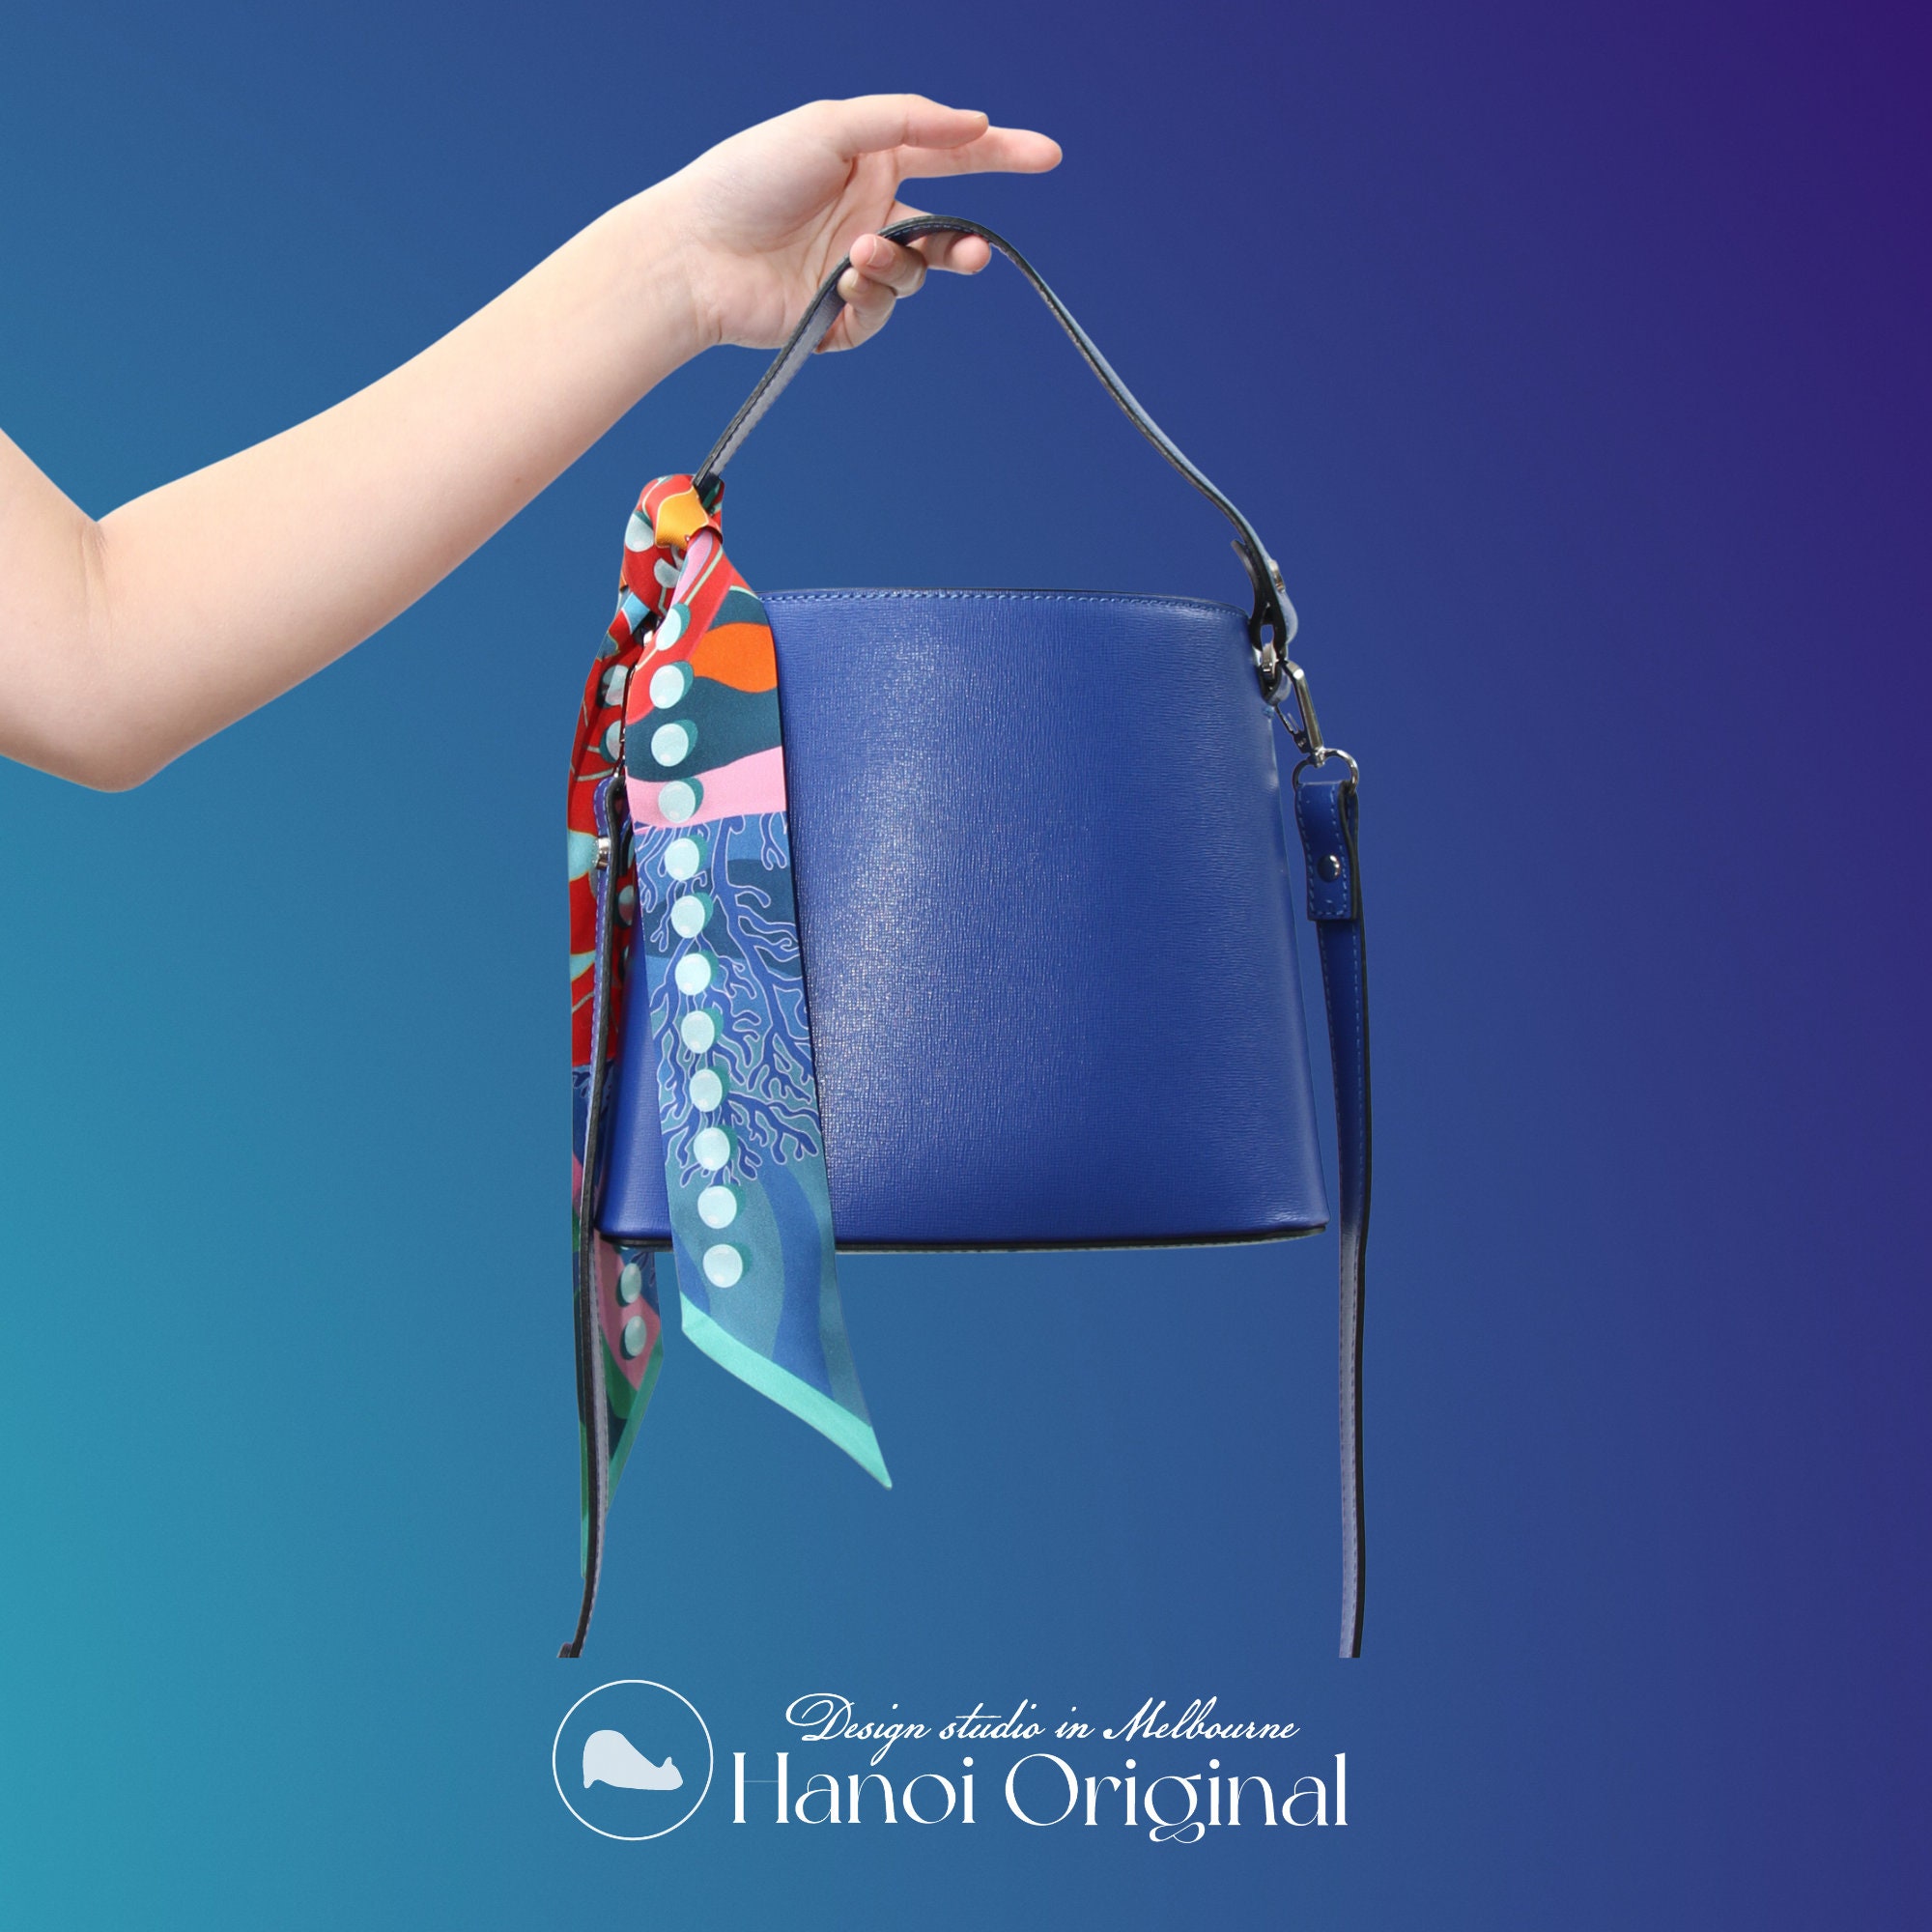 Twilly Scarf Decoration Bag Charm Bag Handle Decoration Silk Scarf Women  Fashion Accessories